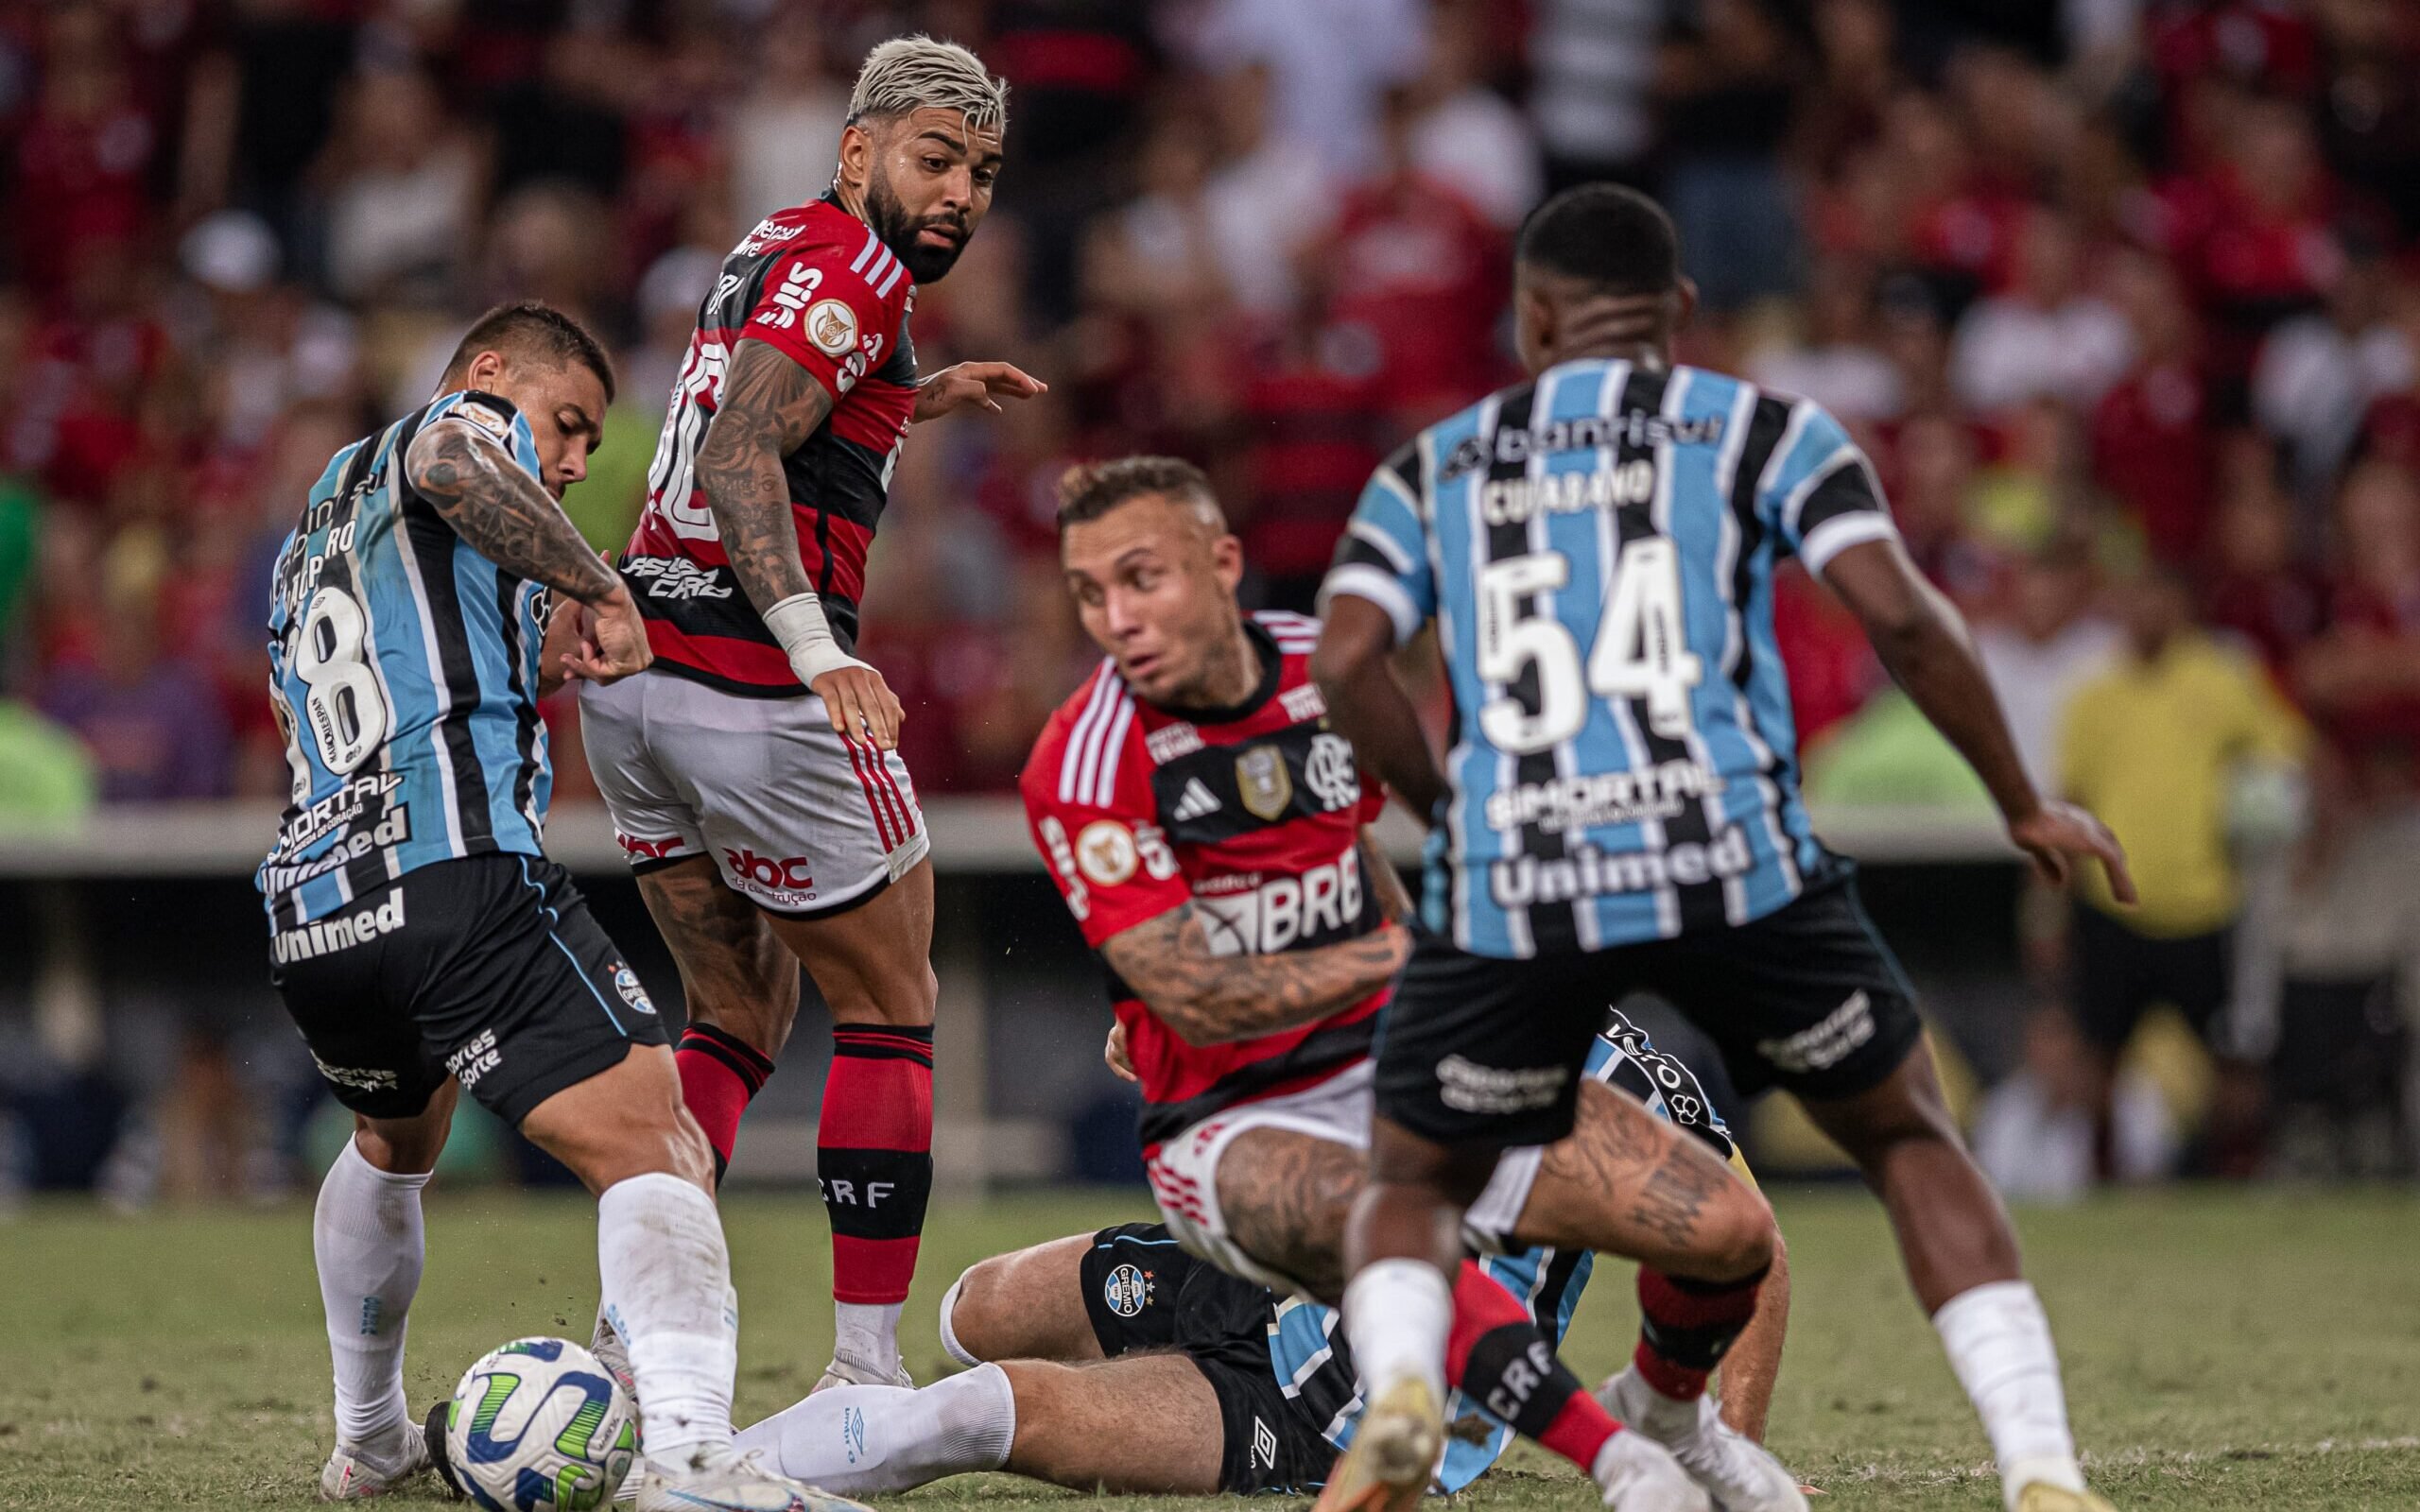 Campeonato Brasileiro 2023: veja times em alta, em baixa e